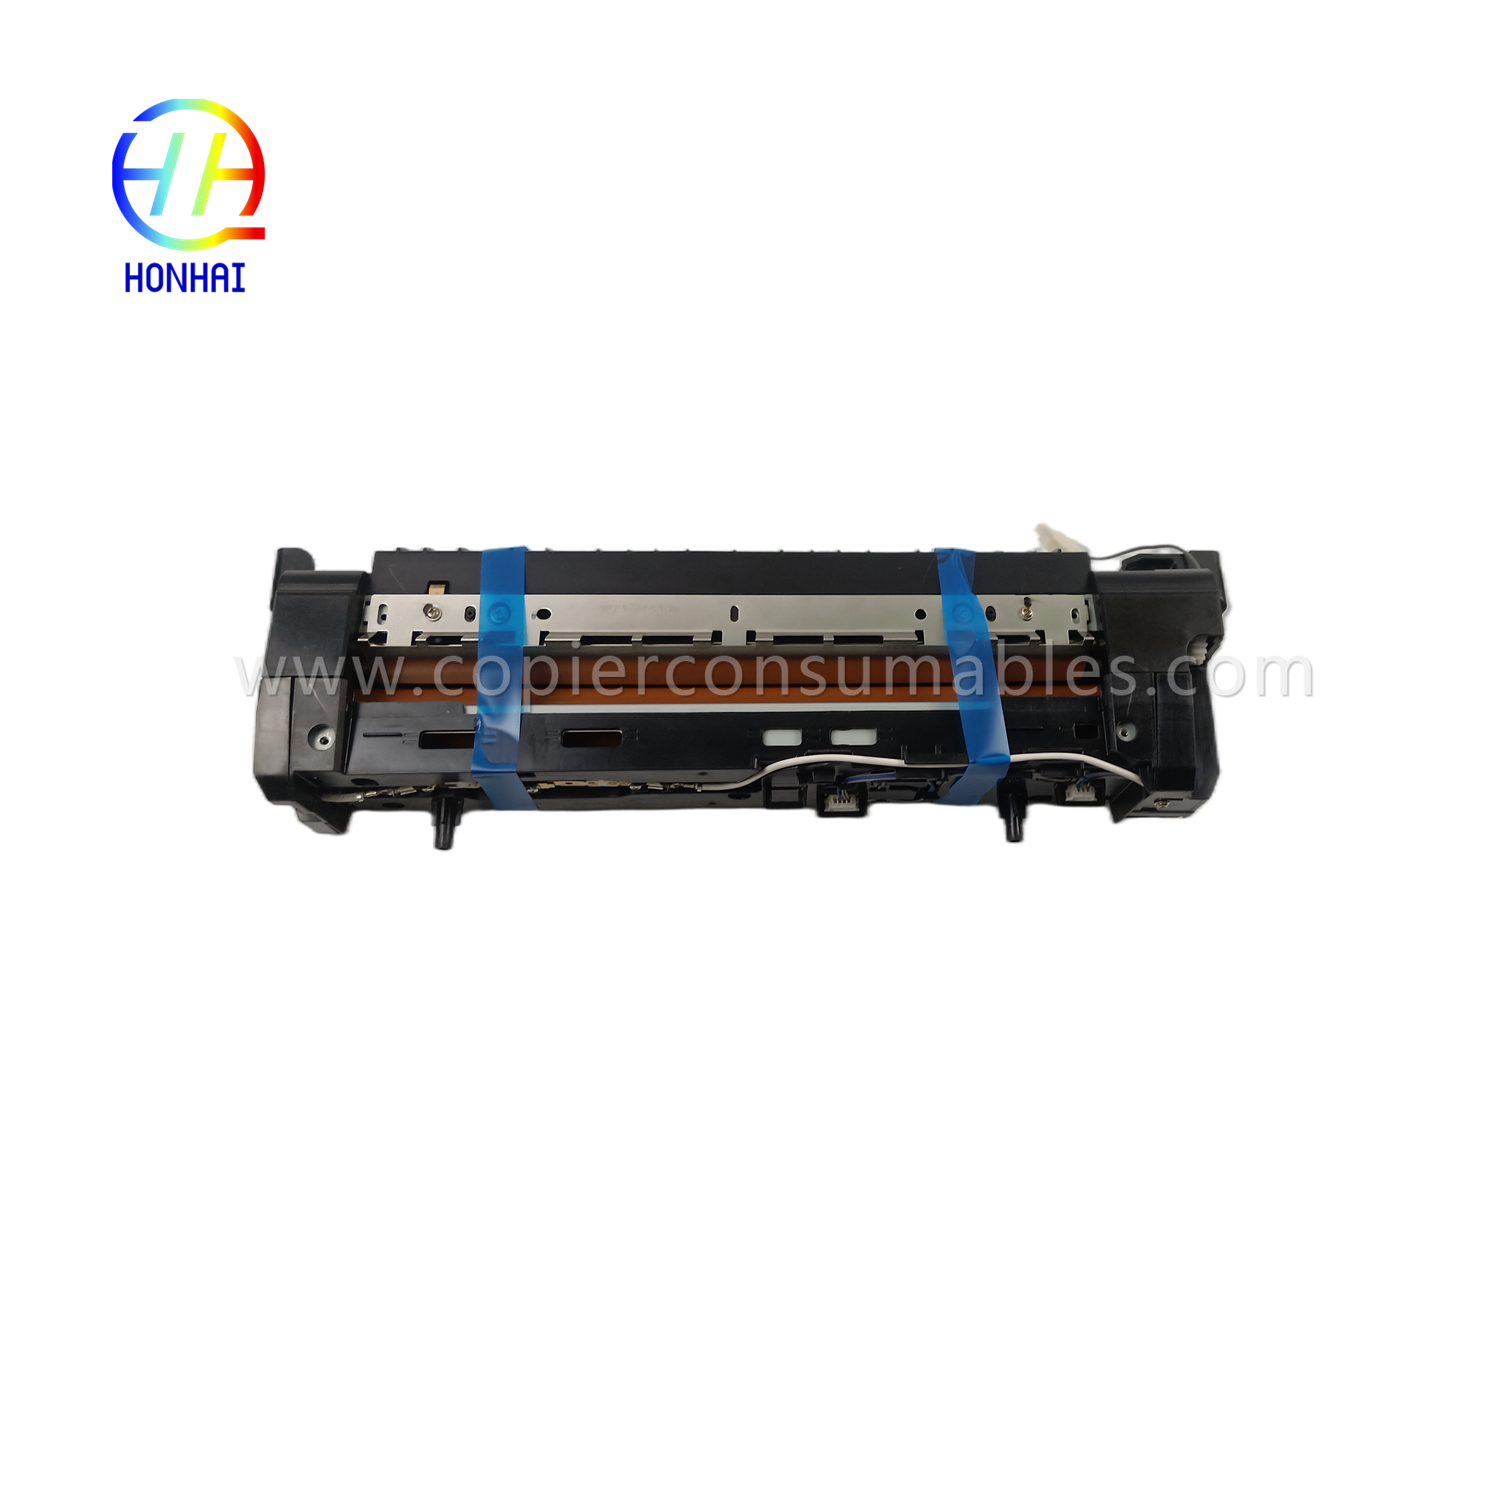 Fuser Unit for Samsung JC91-01163A 4250 4350 K4250 K4350 K4250RX K4350LX K4250LX Fuser Assembly